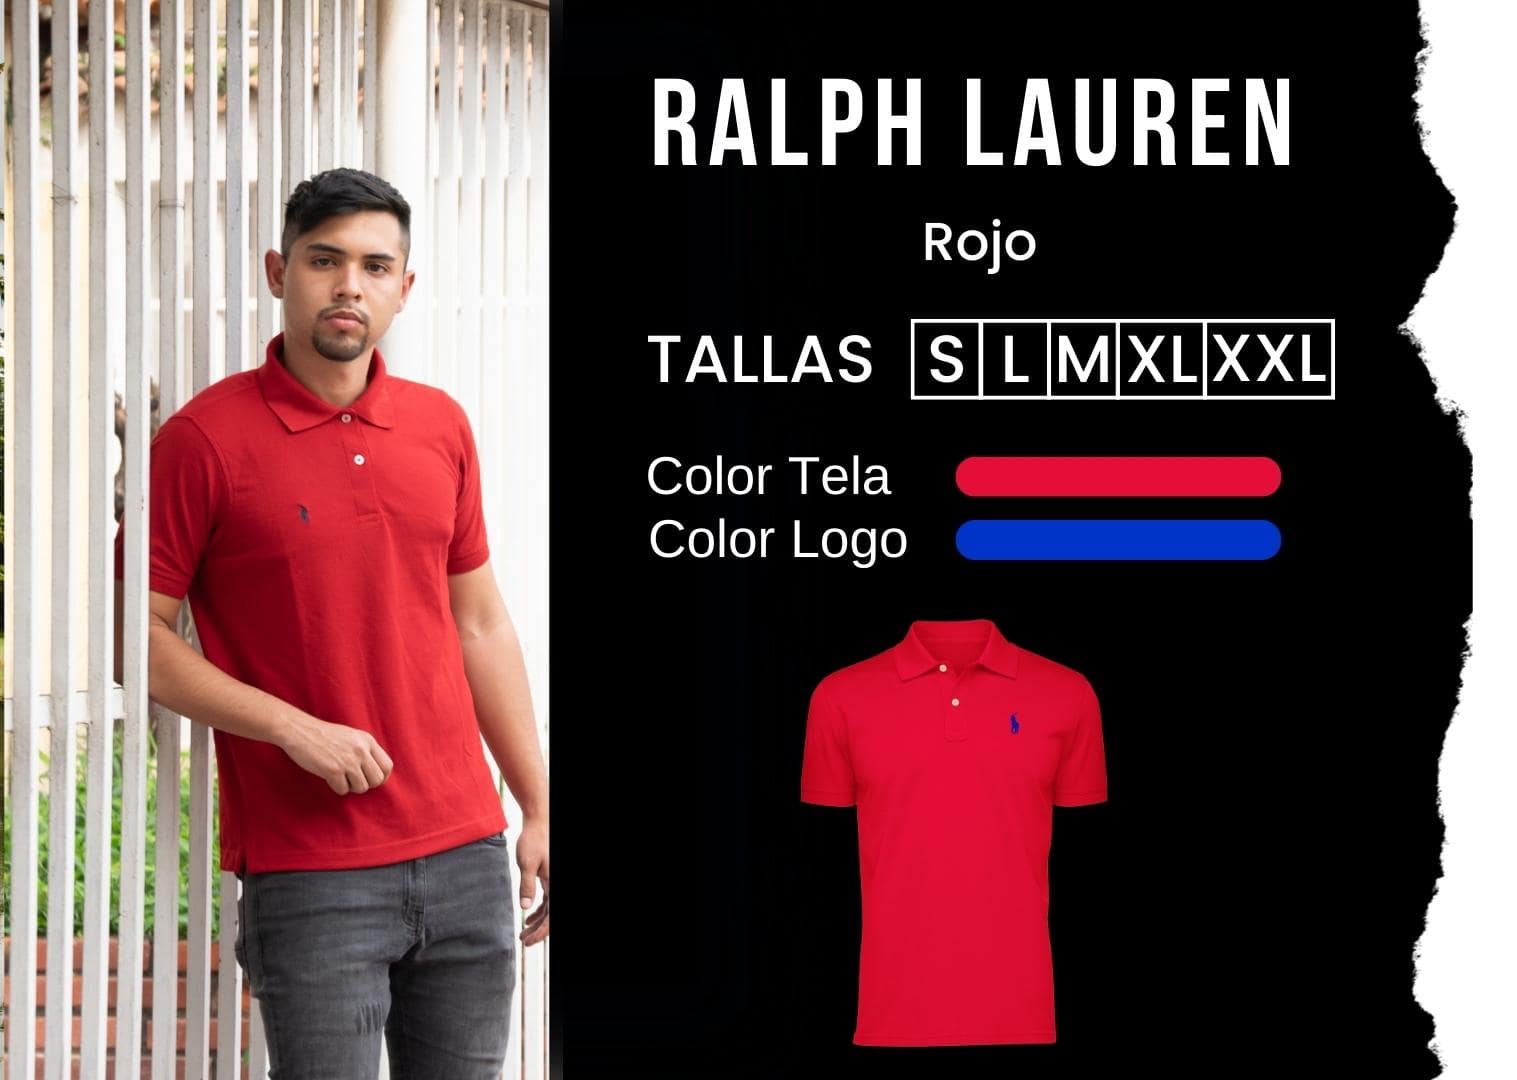 camiseta Ralph Lauren polo hombre tienda olevan color rojo